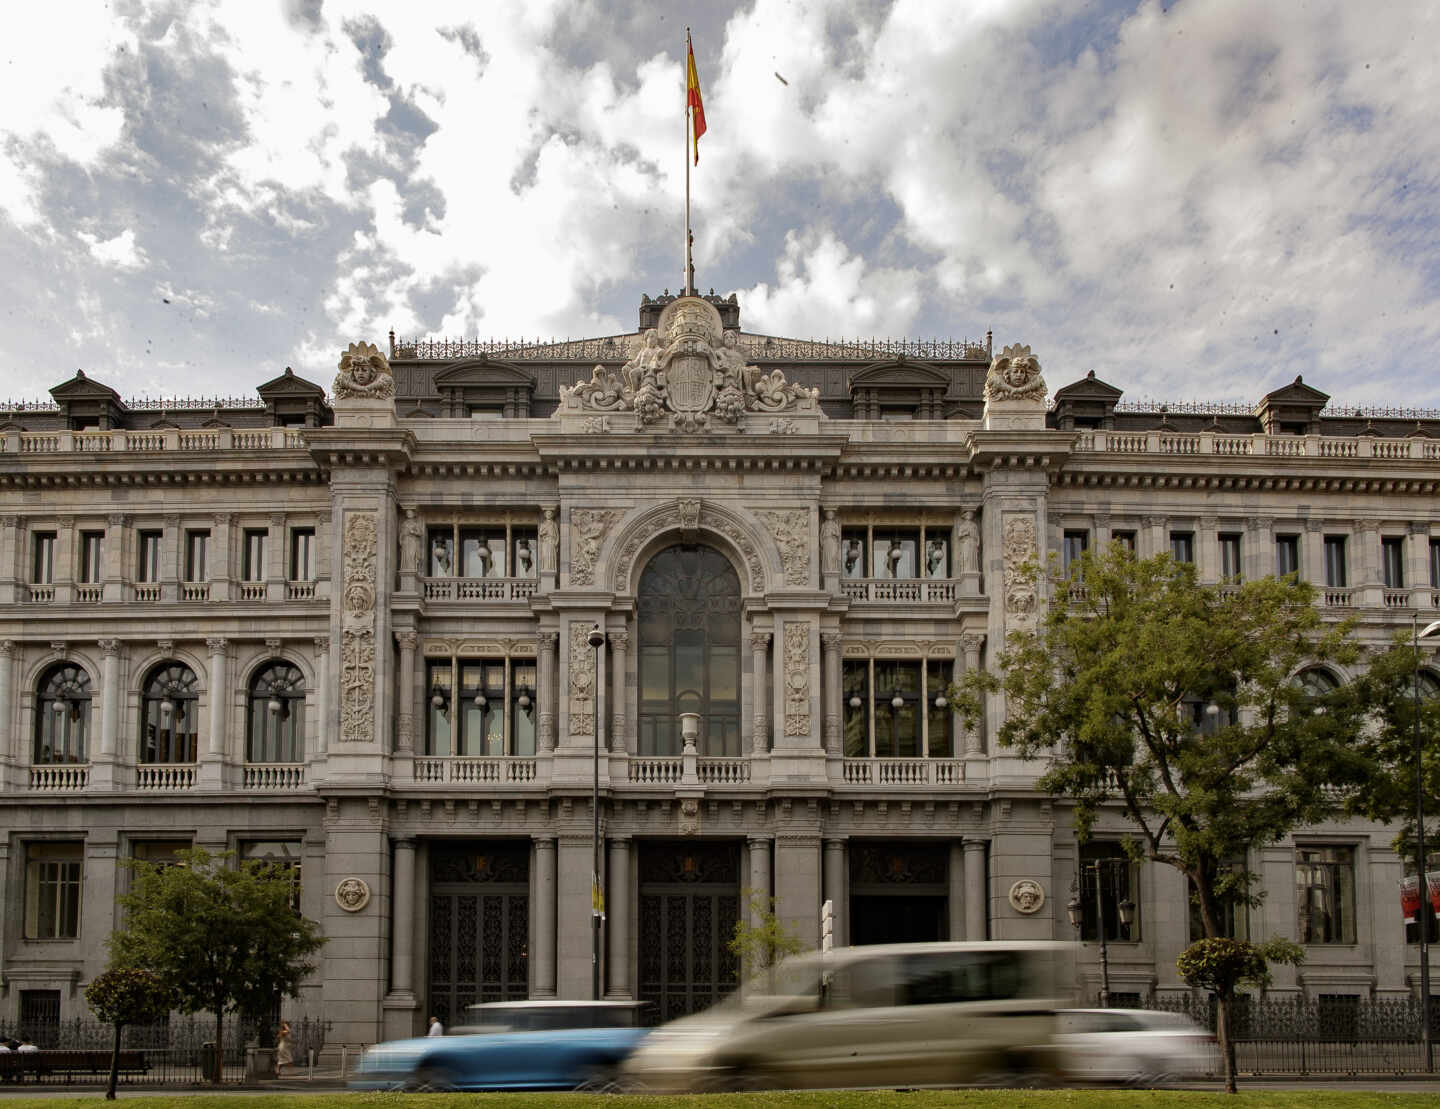 El Banco de España pide elevar "drásticamente" los rastreos para evitar más daños a la economía